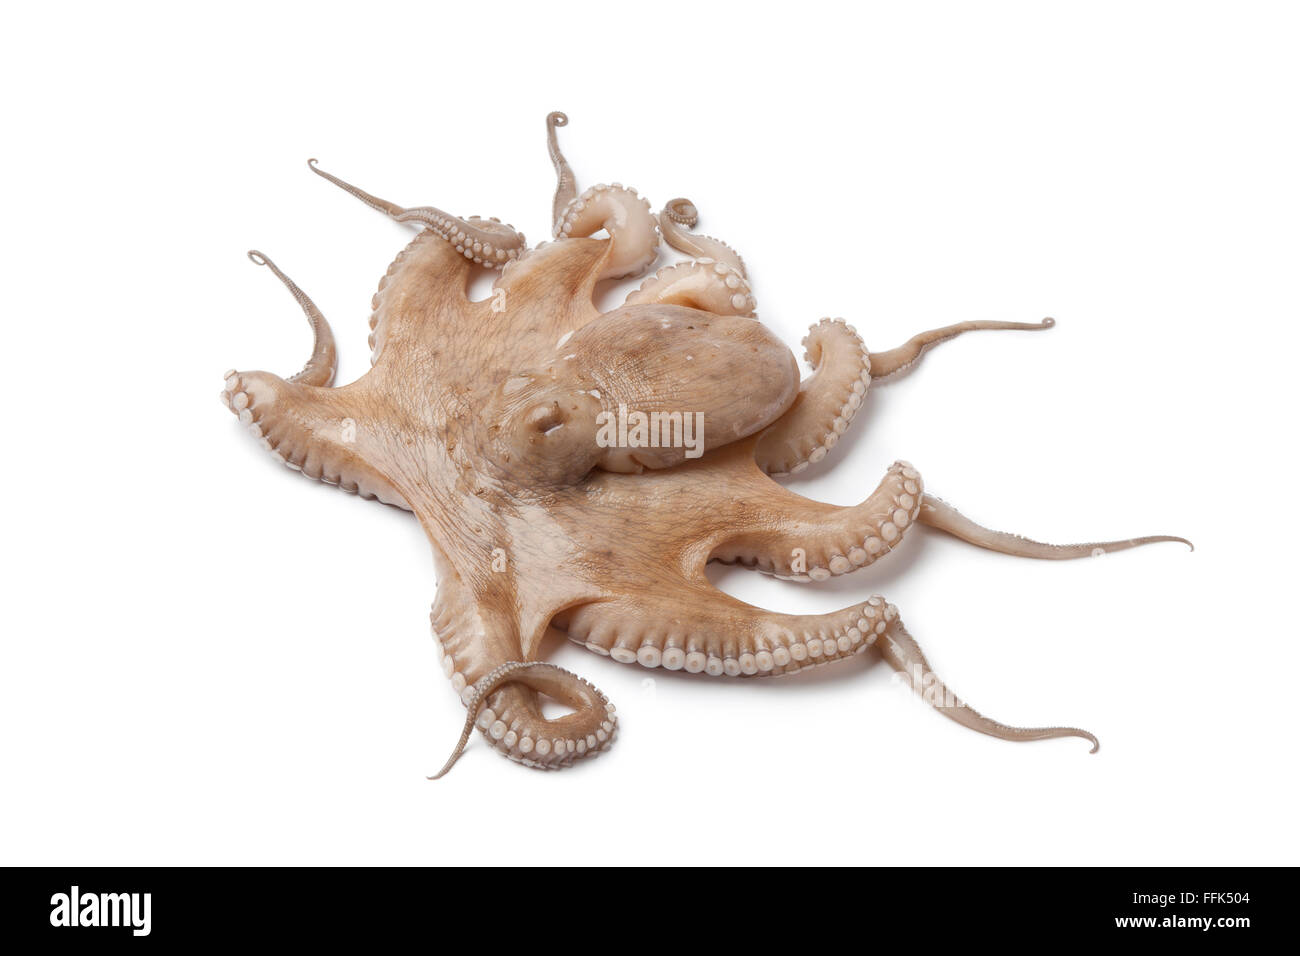 Whole single fresh raw octopus isolated on white background Stock Photo